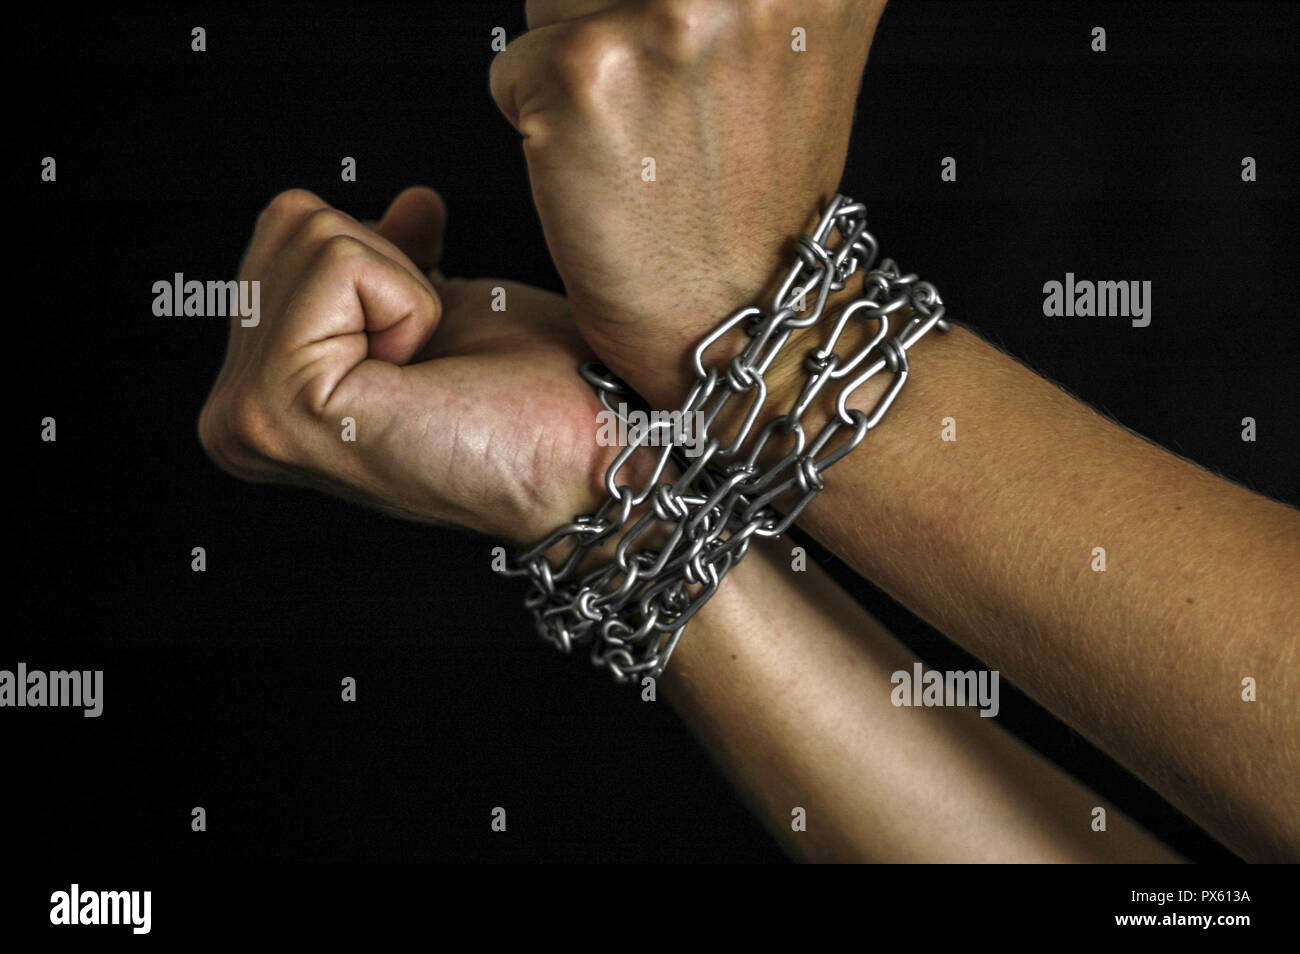 Hände, gefesselt mit Ketten Stockfotografie - Alamy